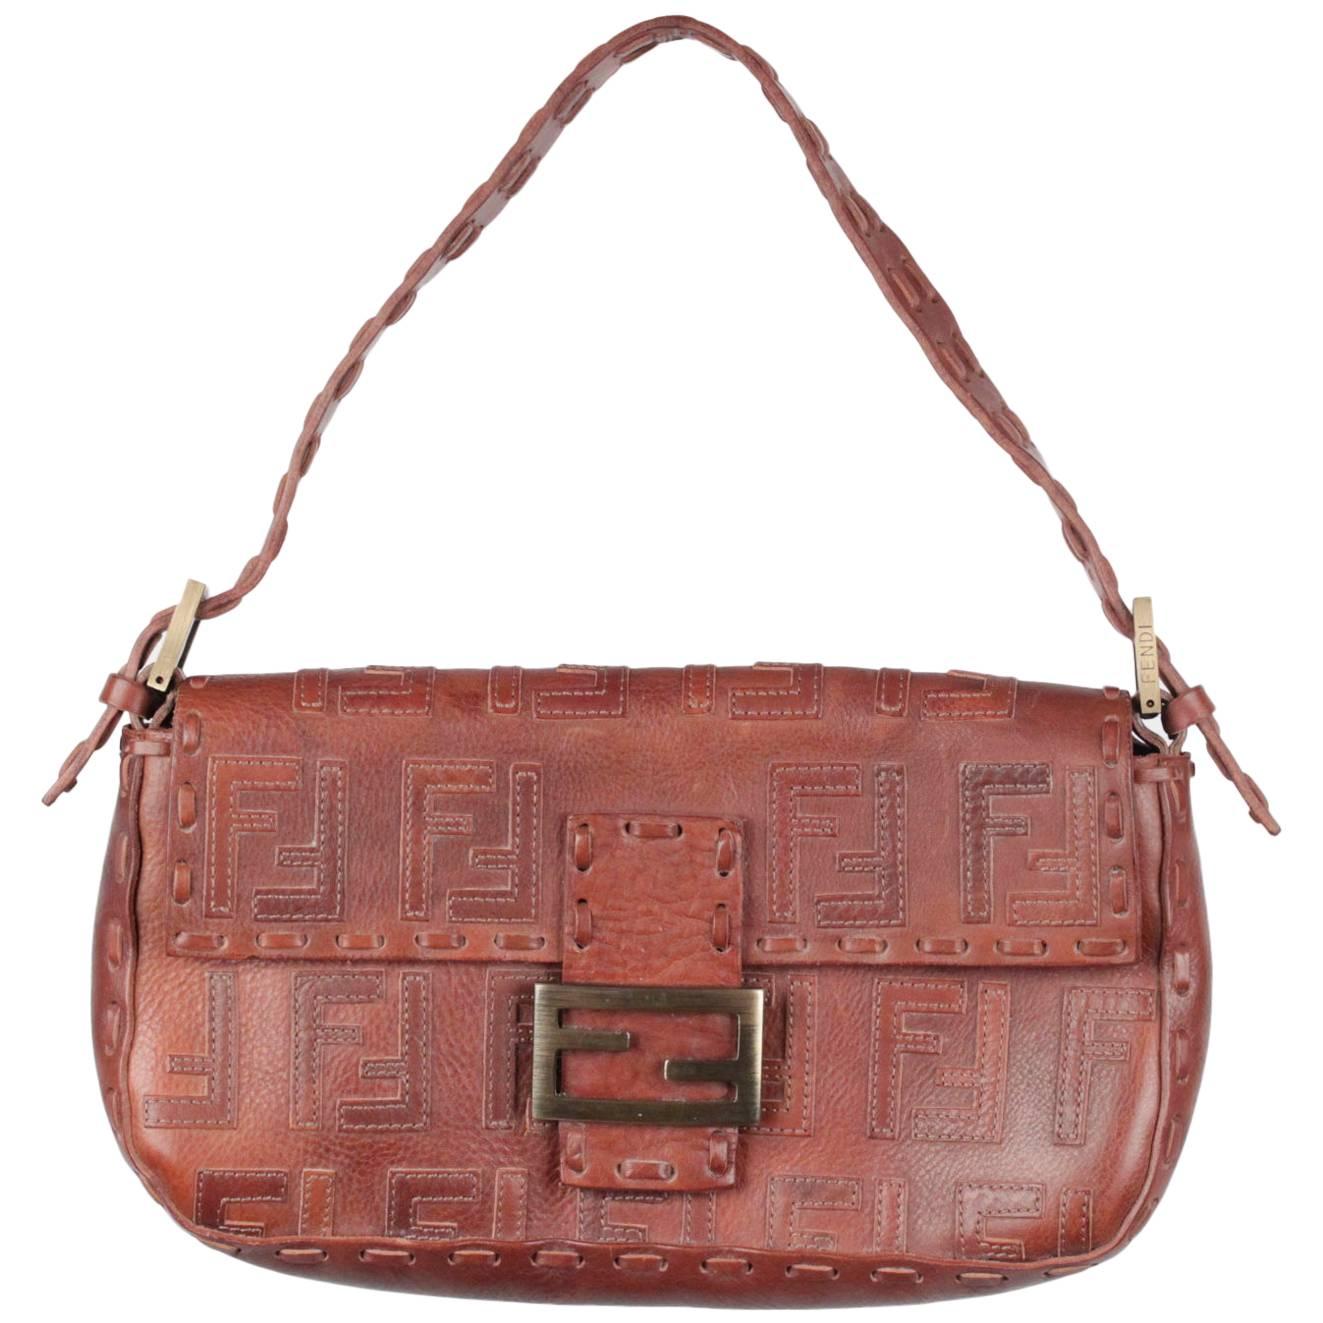 FENDI Brown Leather BAGUETTE BAG Shoulder Bag HANDBAG w/ Stitched FF LOGOS